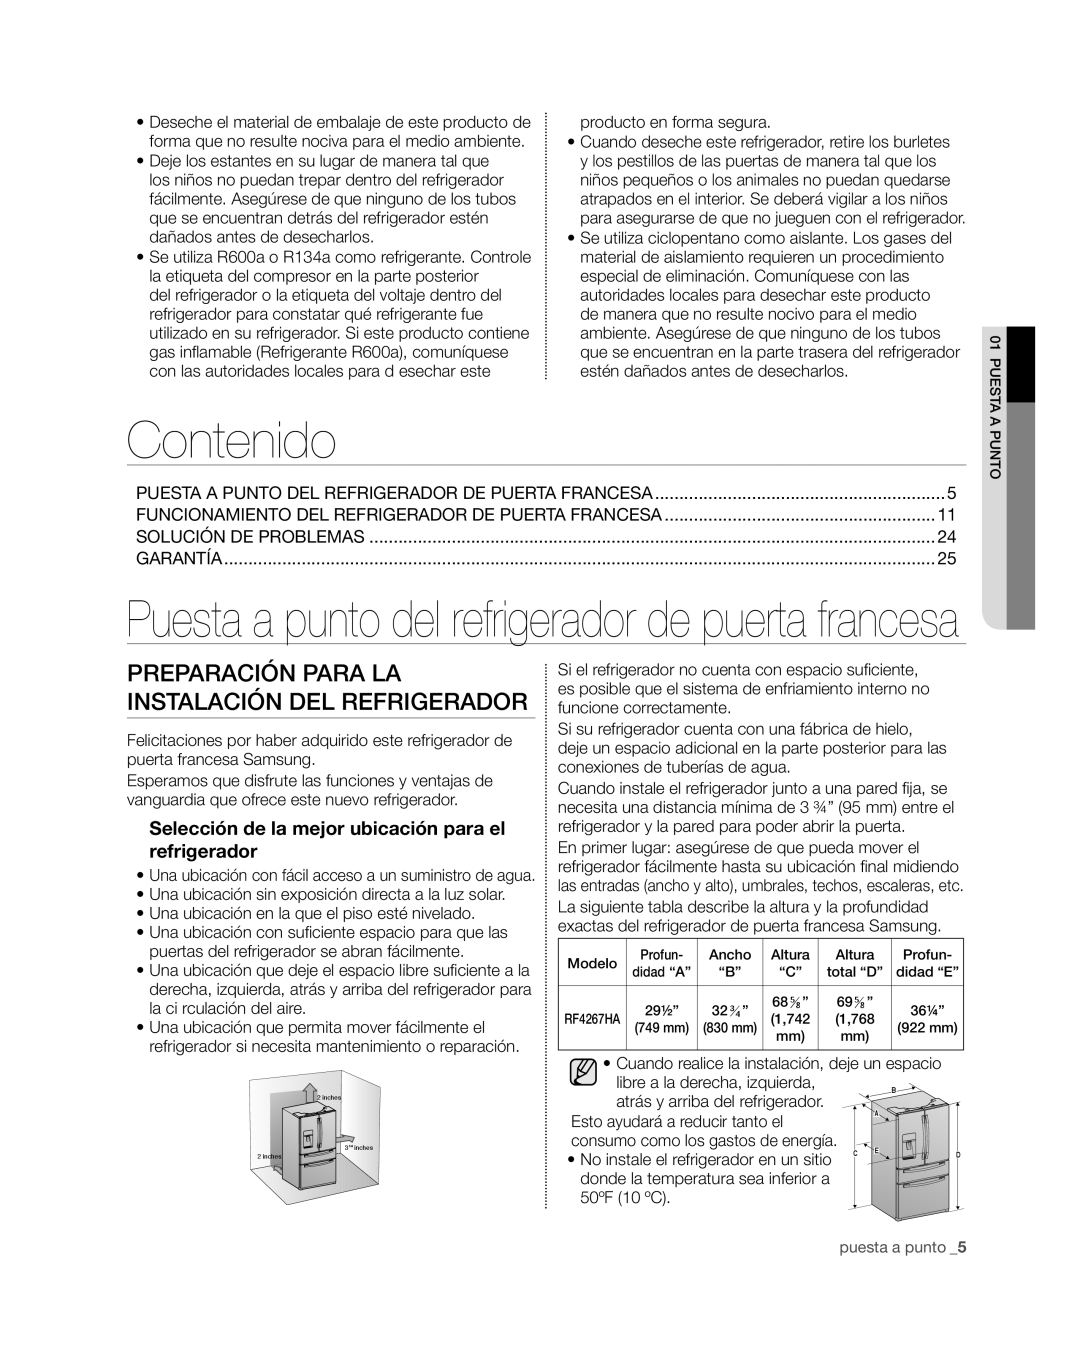 Samsung RF4267HA user manual Contenido, Preparación para la instalación del refrigerador 